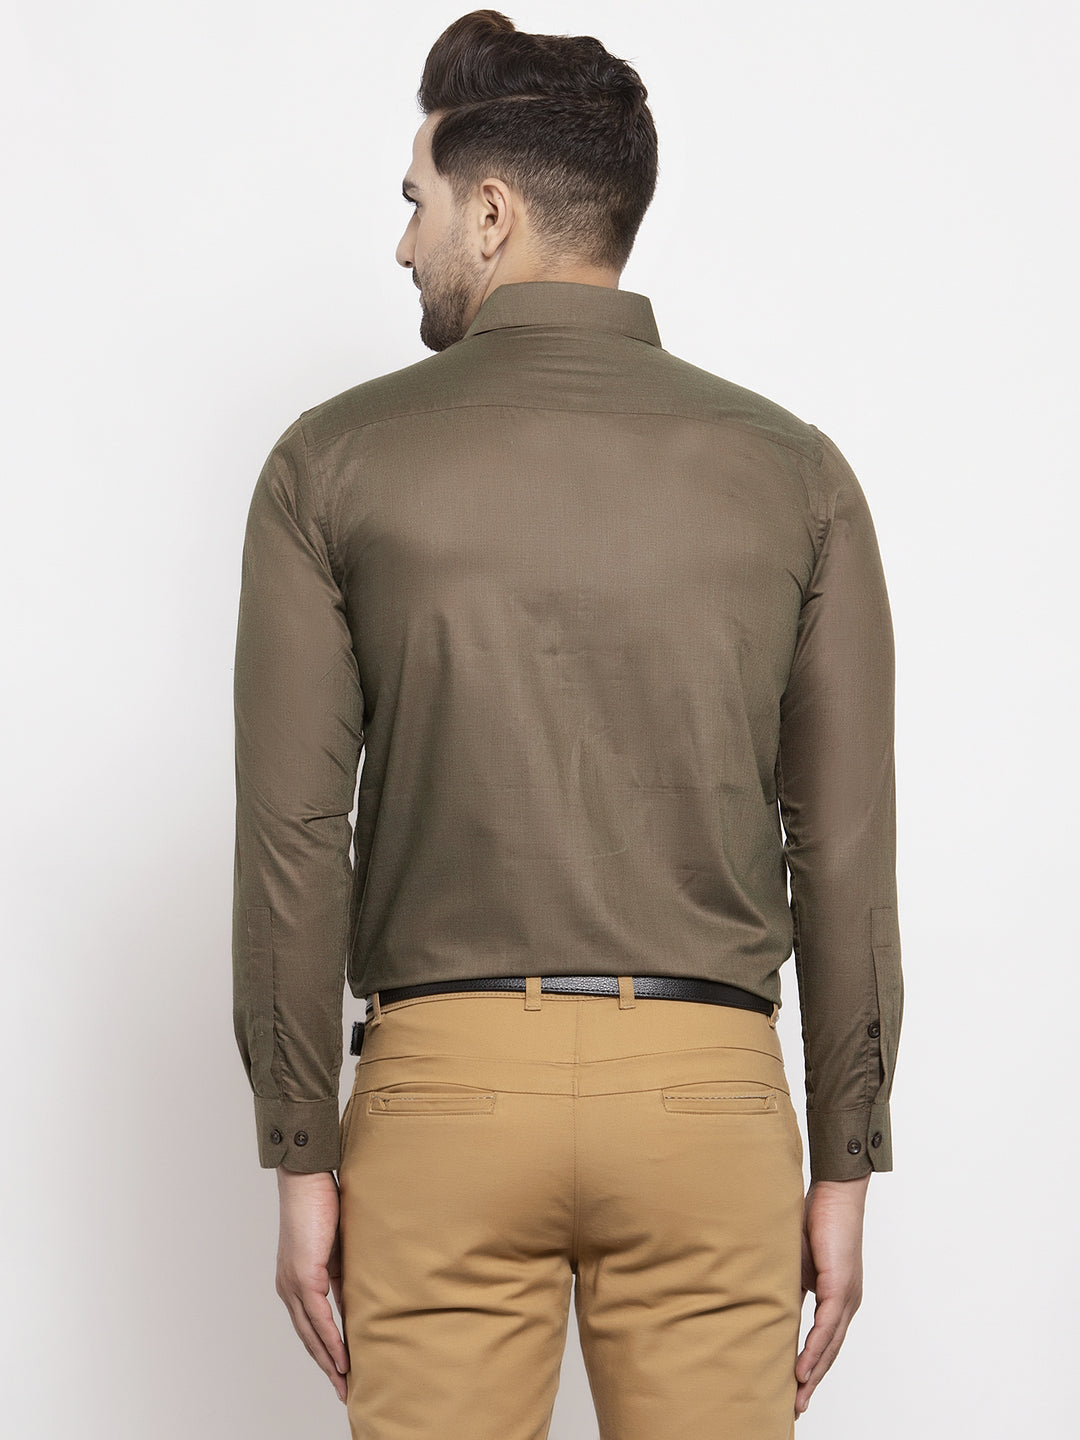 Men's Cotton Solid Dark Brown Formal Shirt's ( SF 361Dark-Brown ) - Jainish